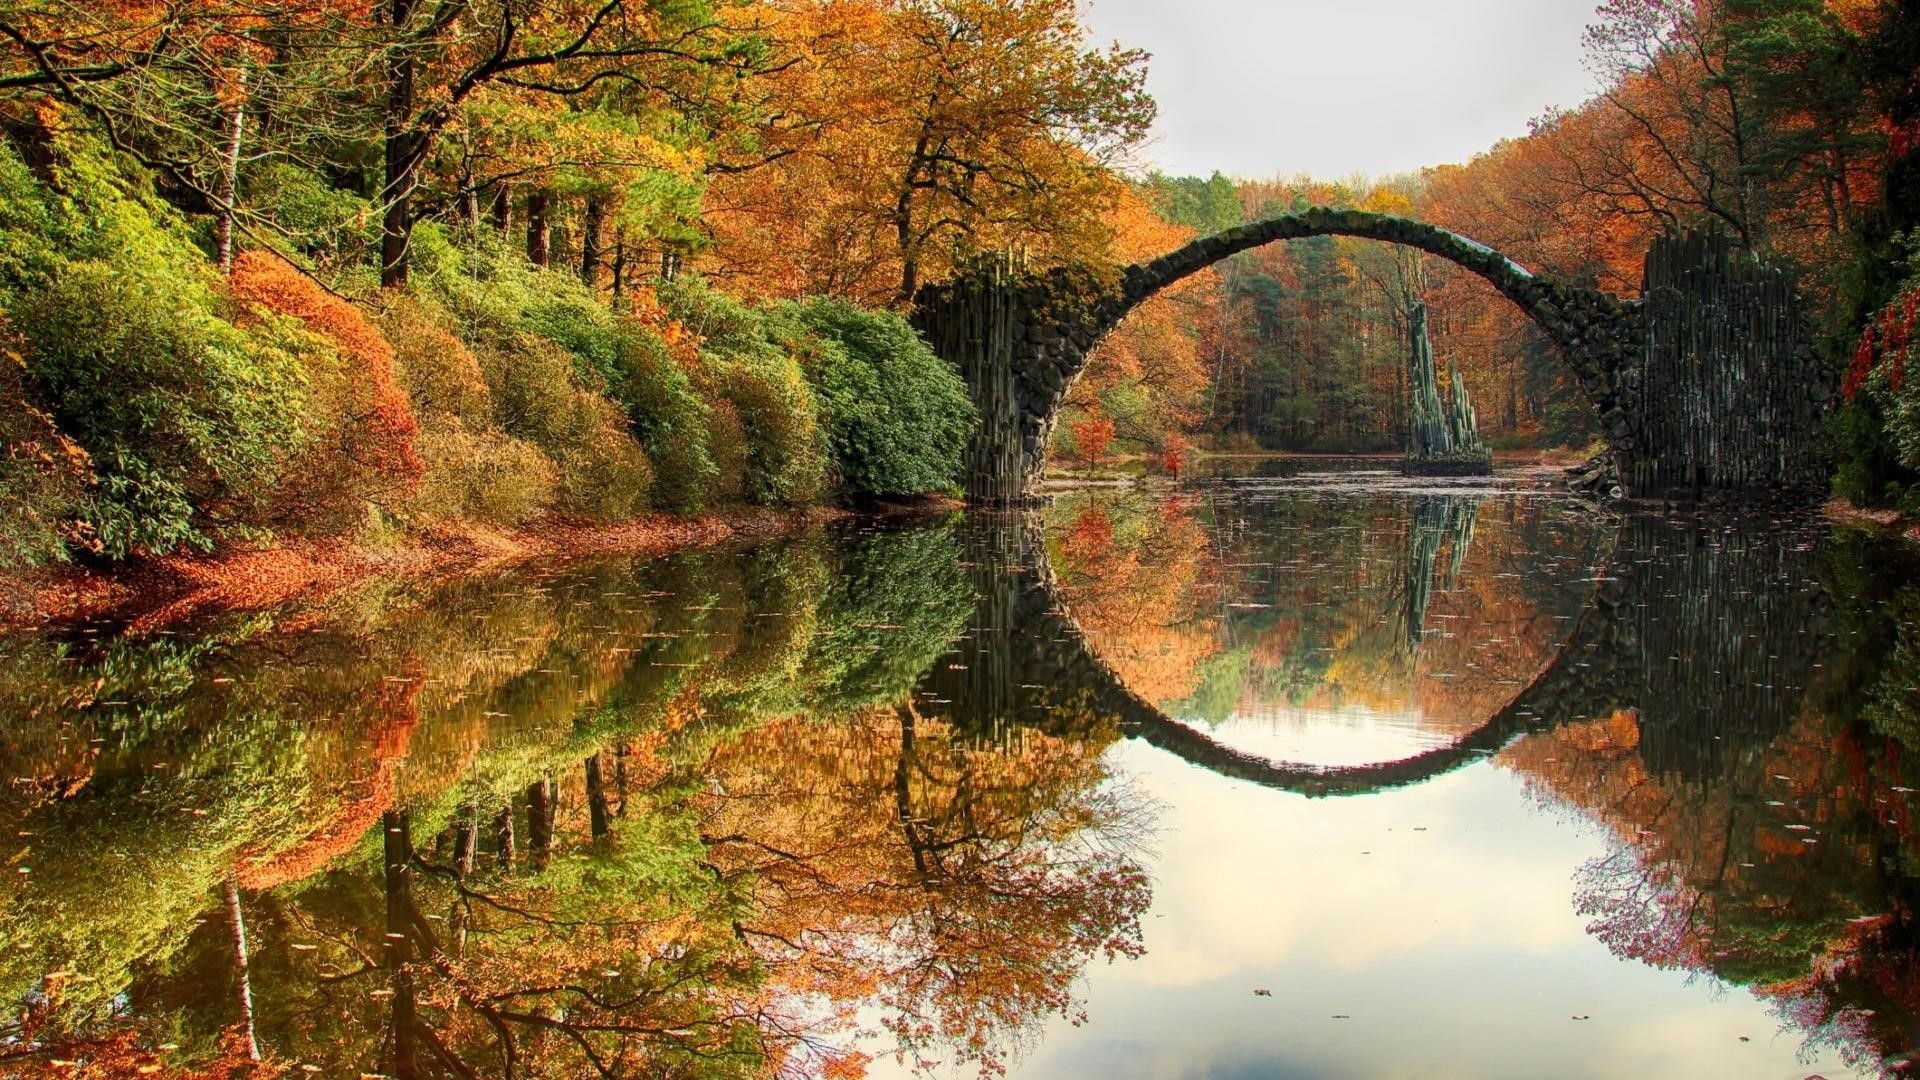 Дьявольский мост посреди реки в лесу с отражением окруженной цветущими деревьями природы обои скачать